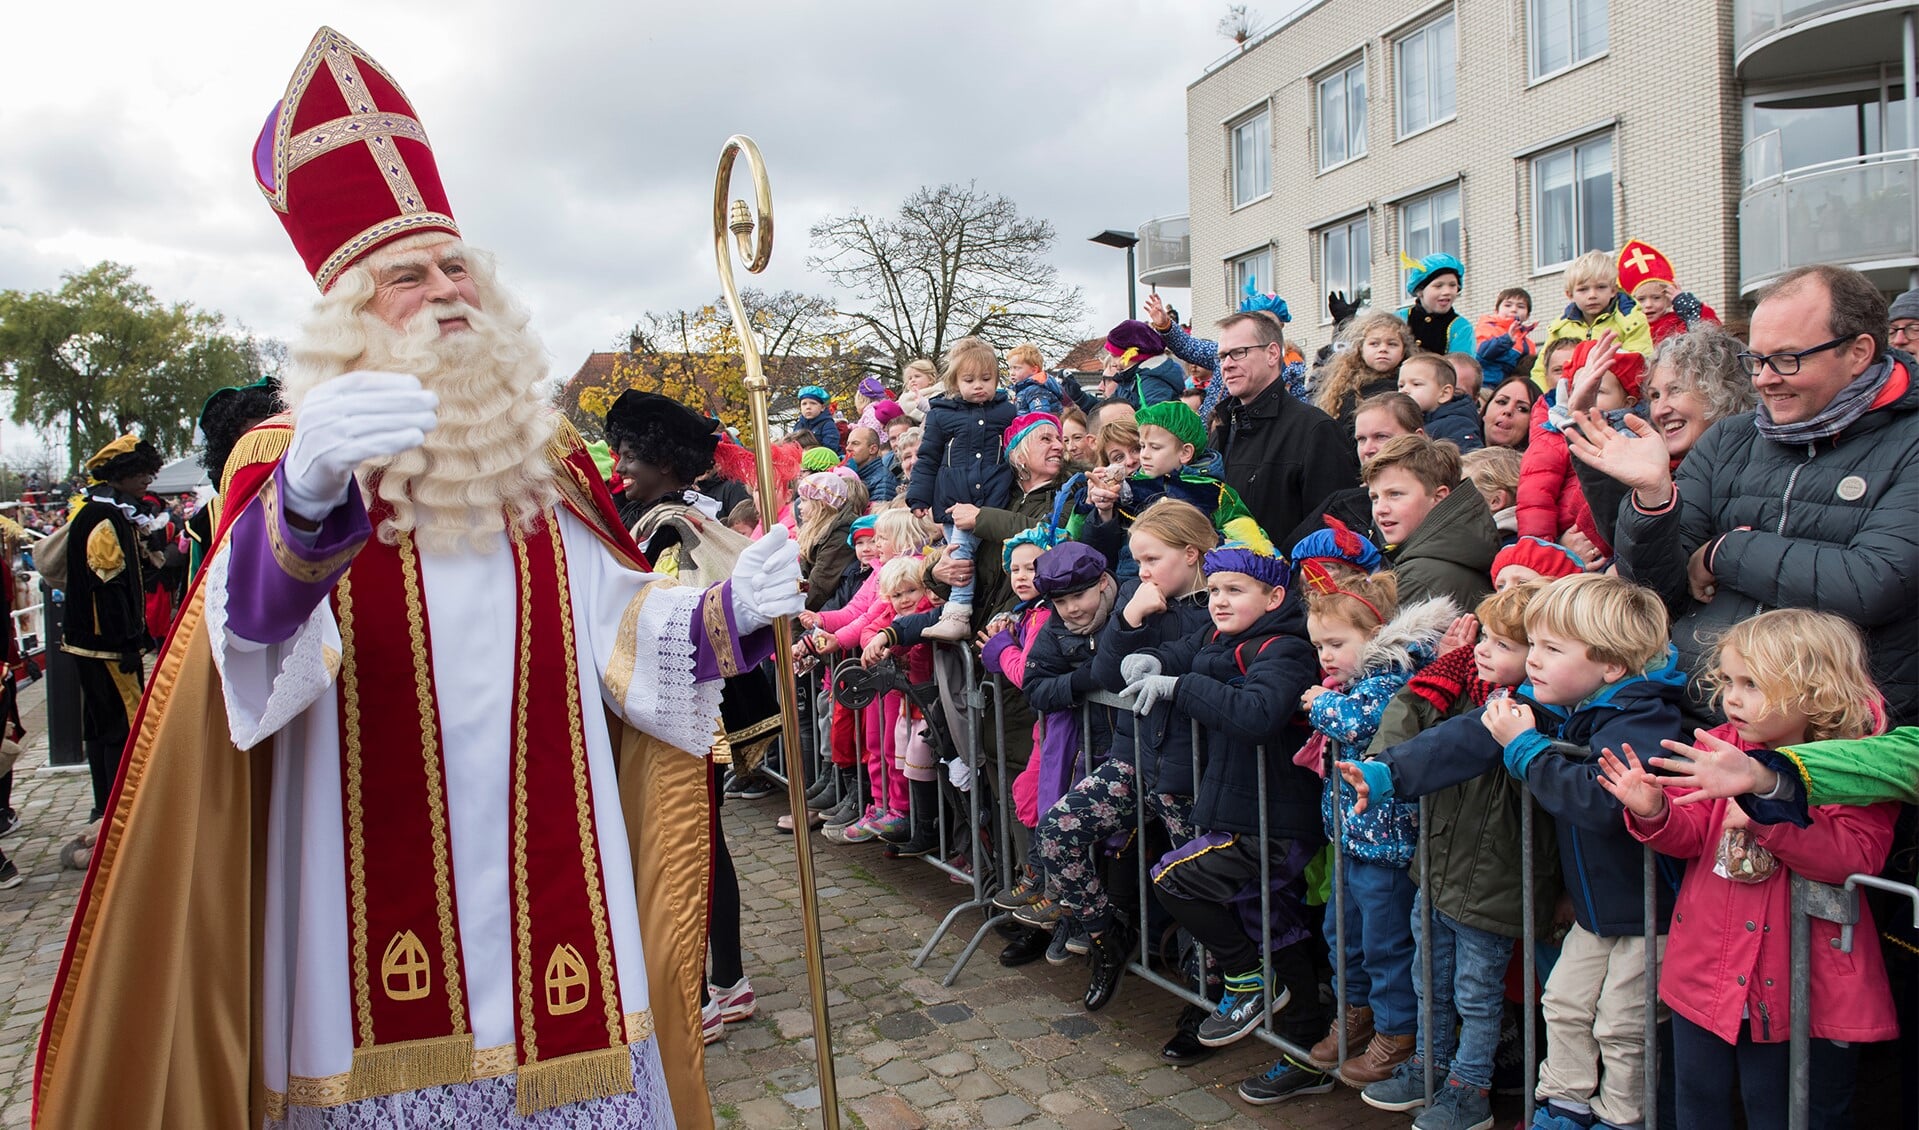 Gezien de huidige situatie rond corona vindt de organisatie een veilige ouderwetse intocht van Sinterklaas niet mogelijk (archieffoto).